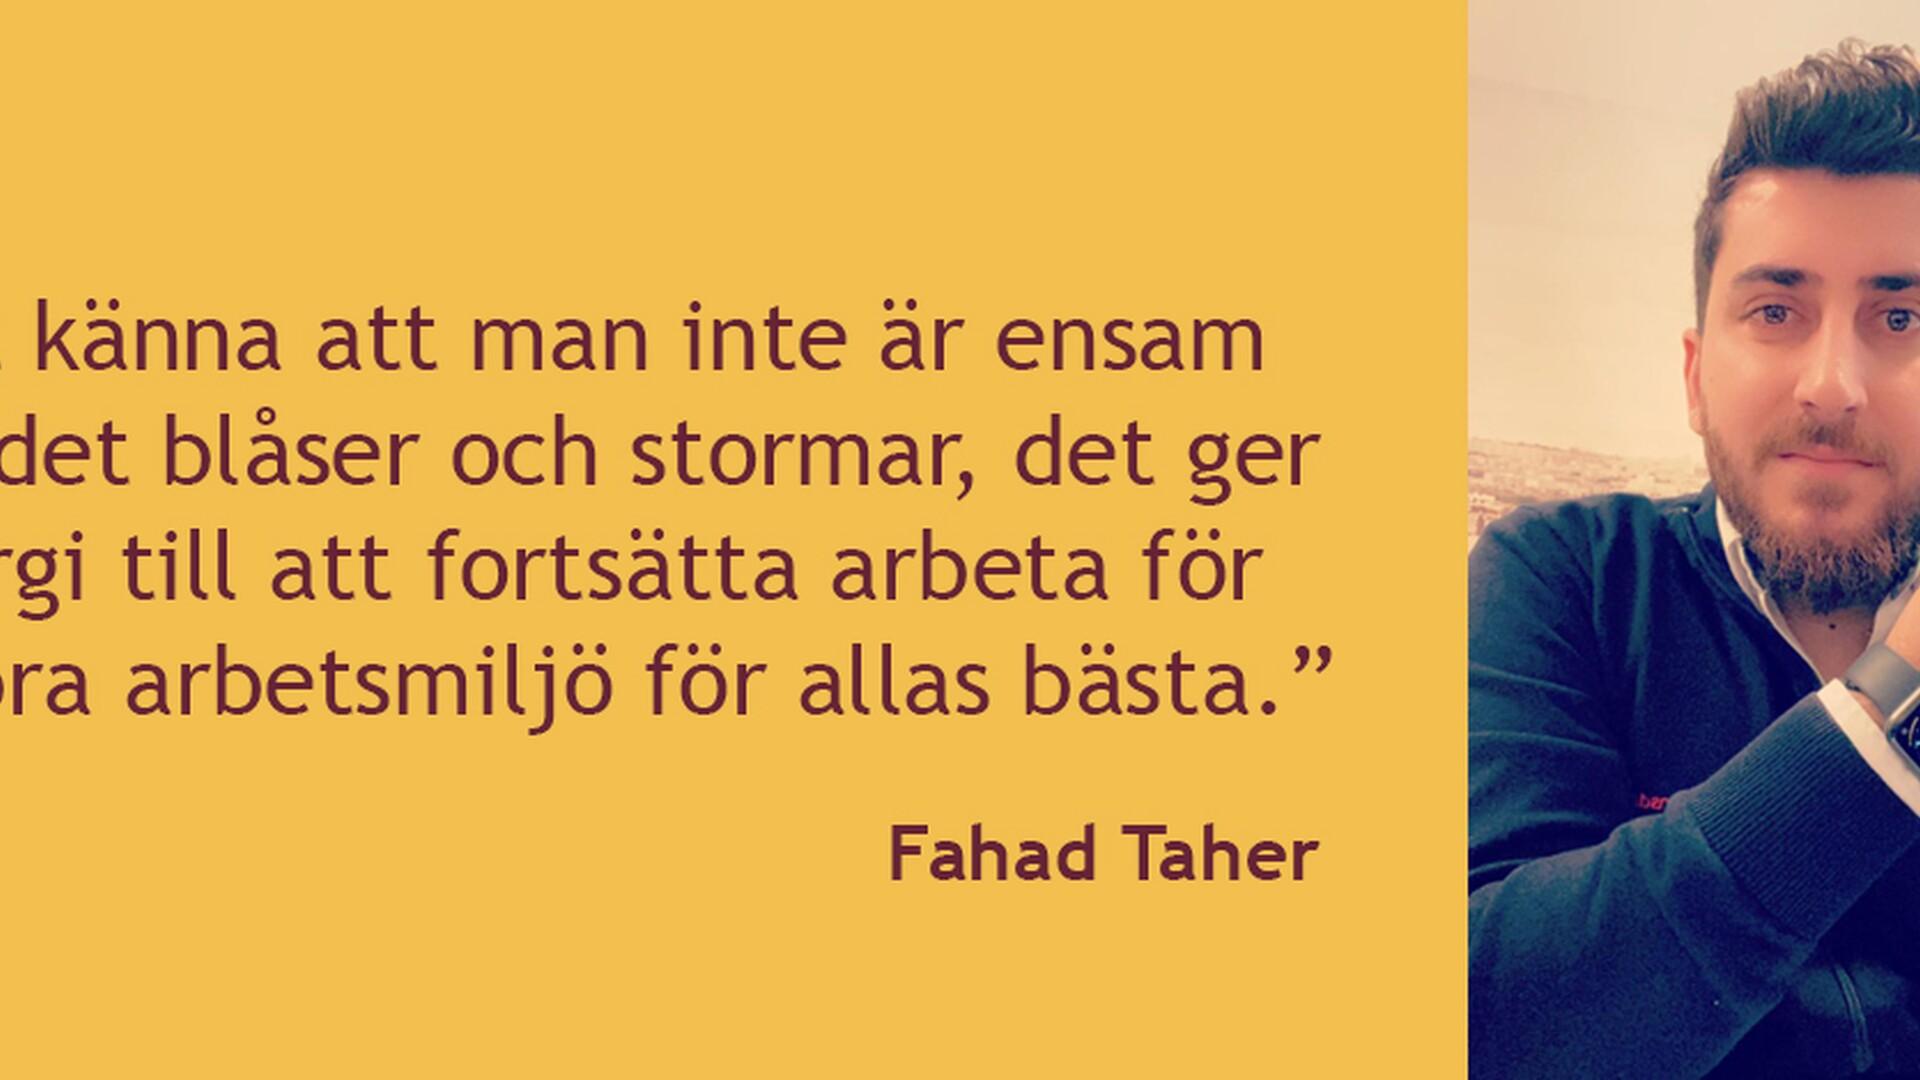 Citat av och bild på Fahad Taher, skyddsombud och bussförare.